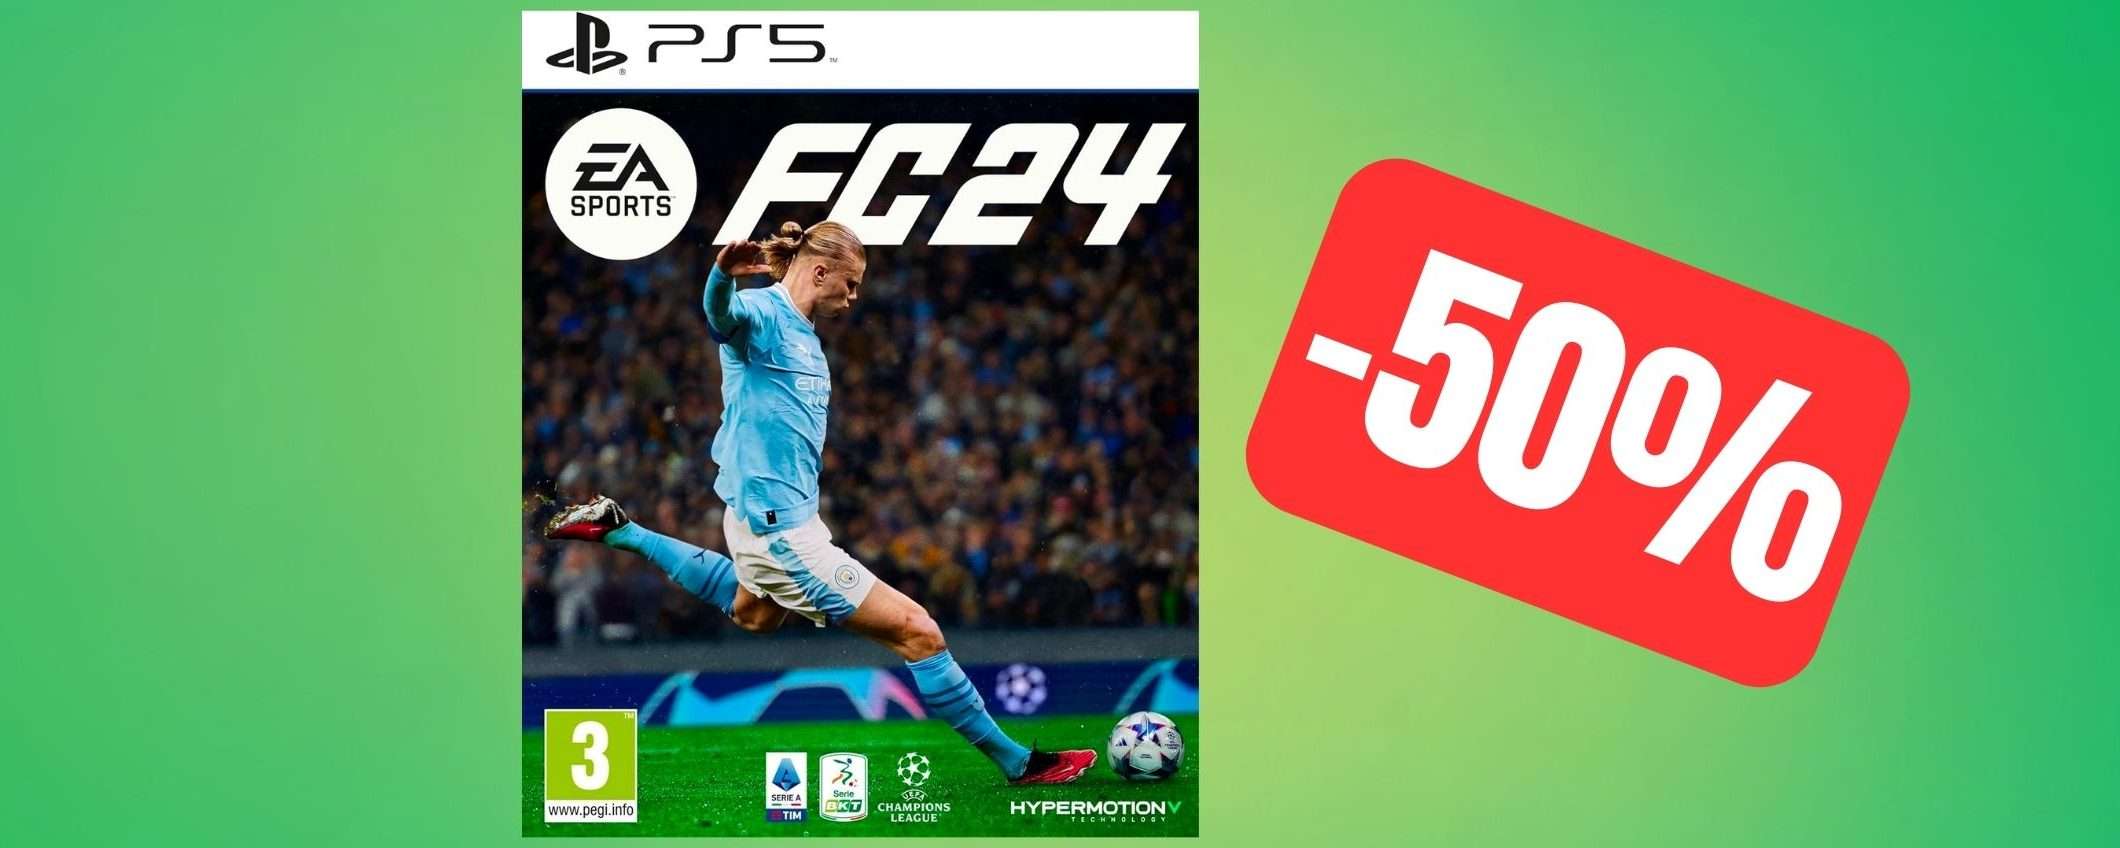 FC 24 per PS5 torna in offerta Amazon alla metà del prezzo